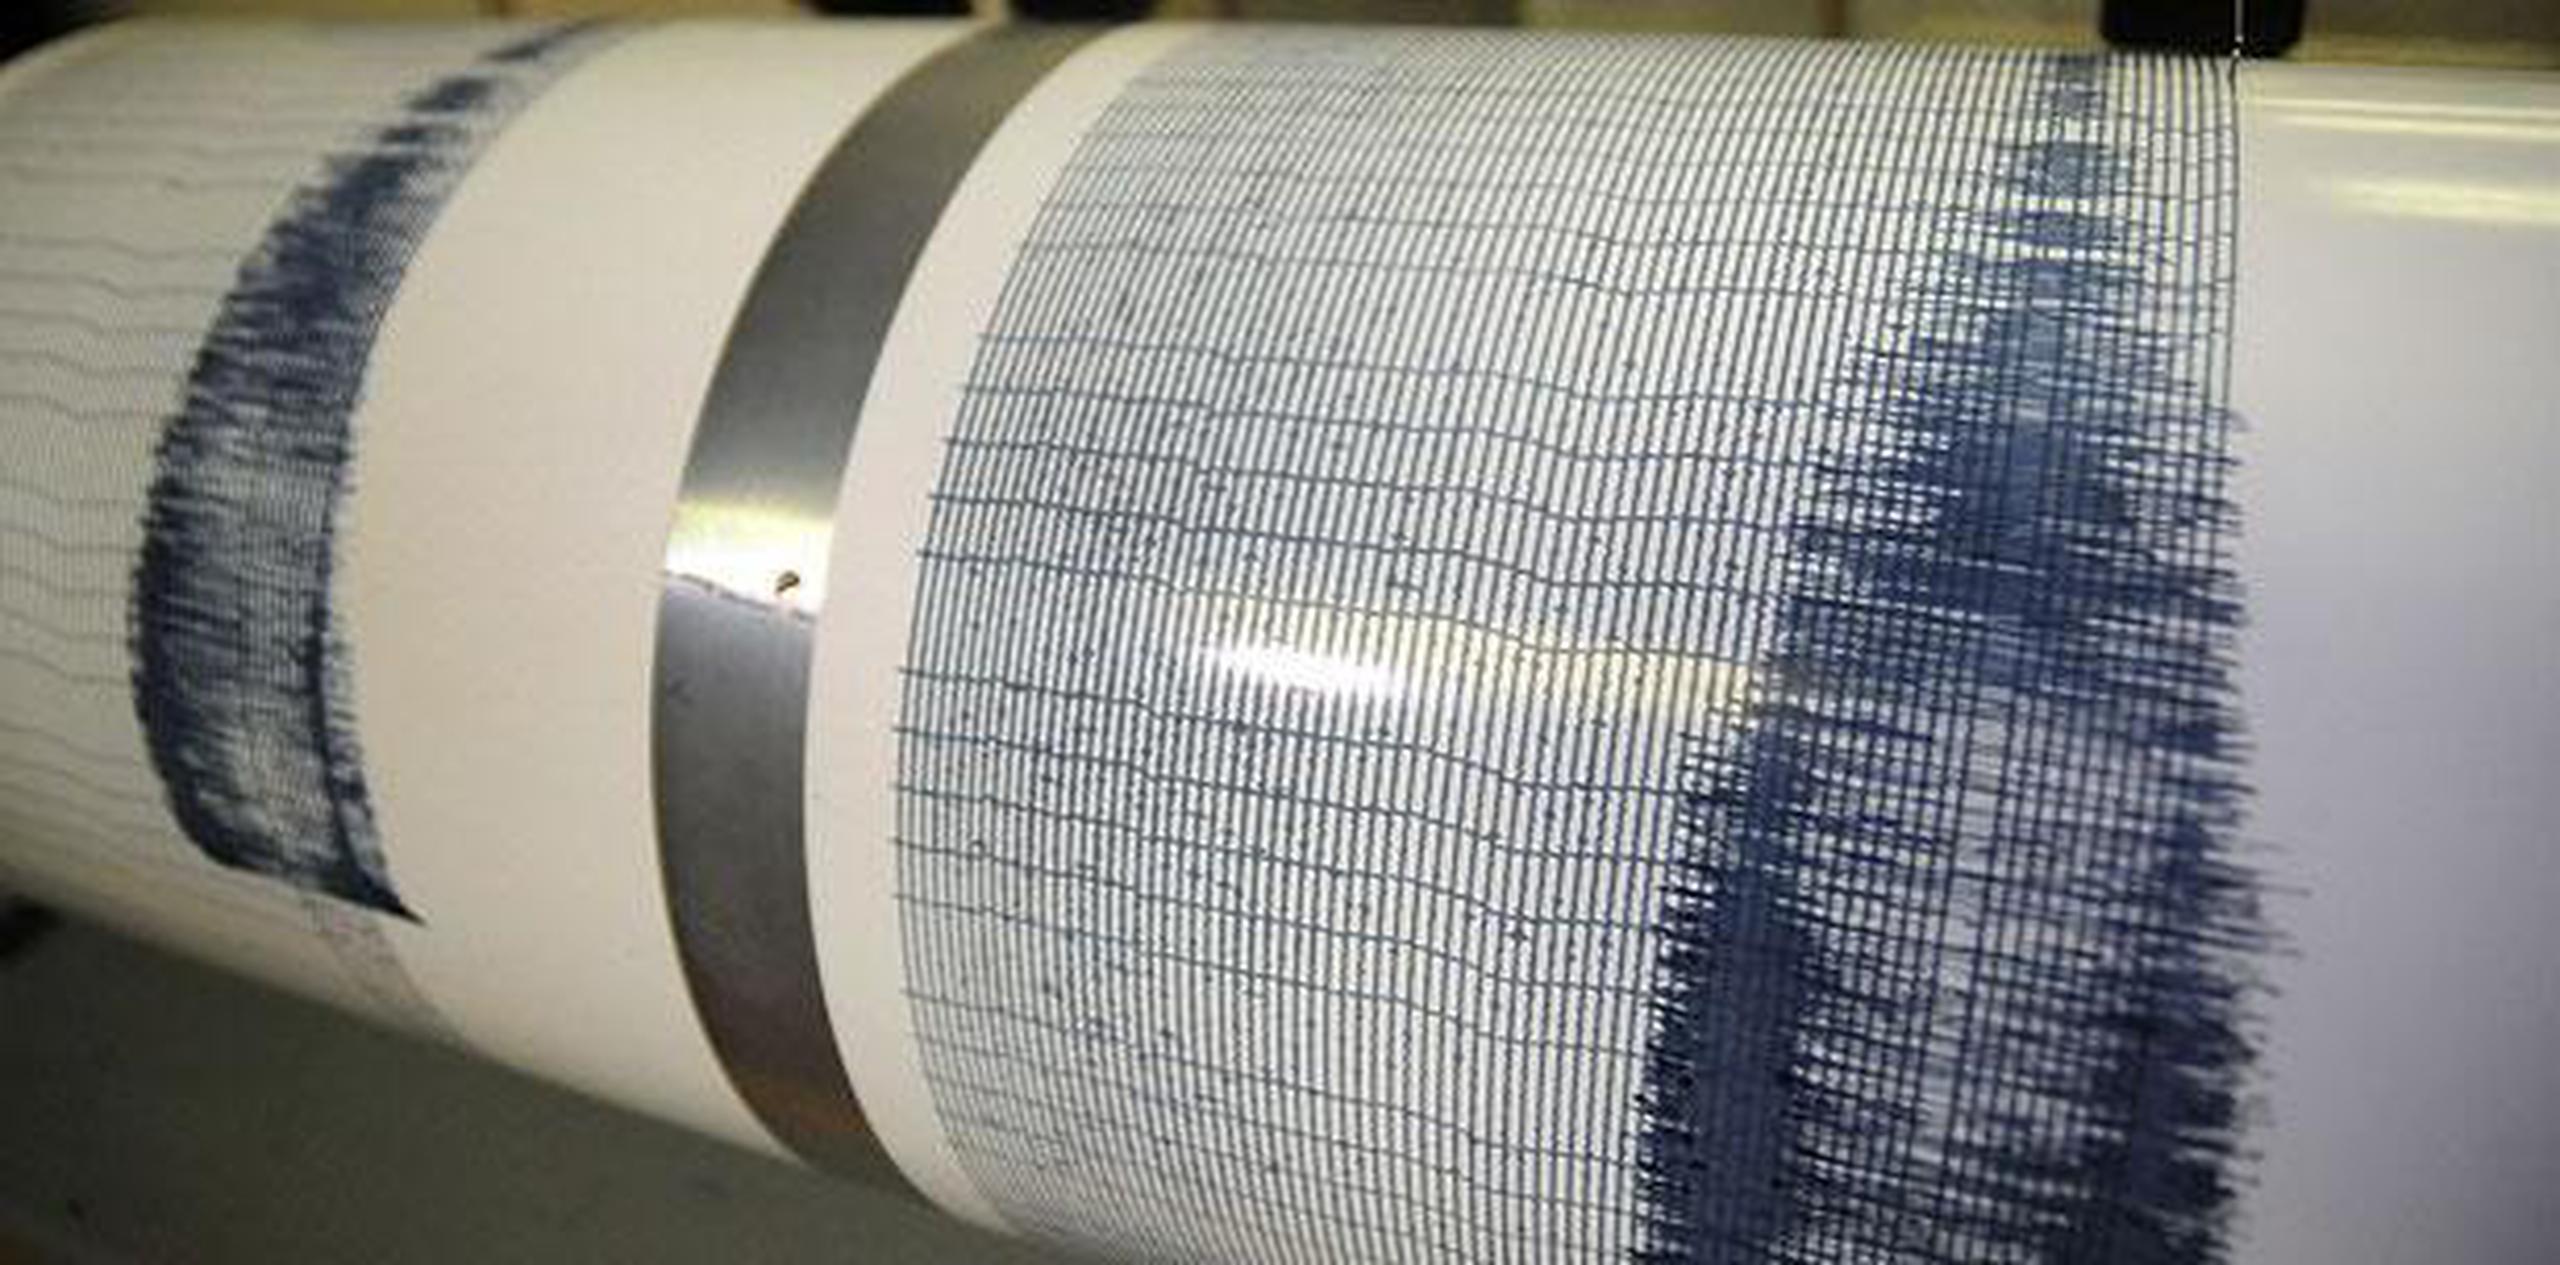 El temblor fue de magnitud 3.7. (Archivo)